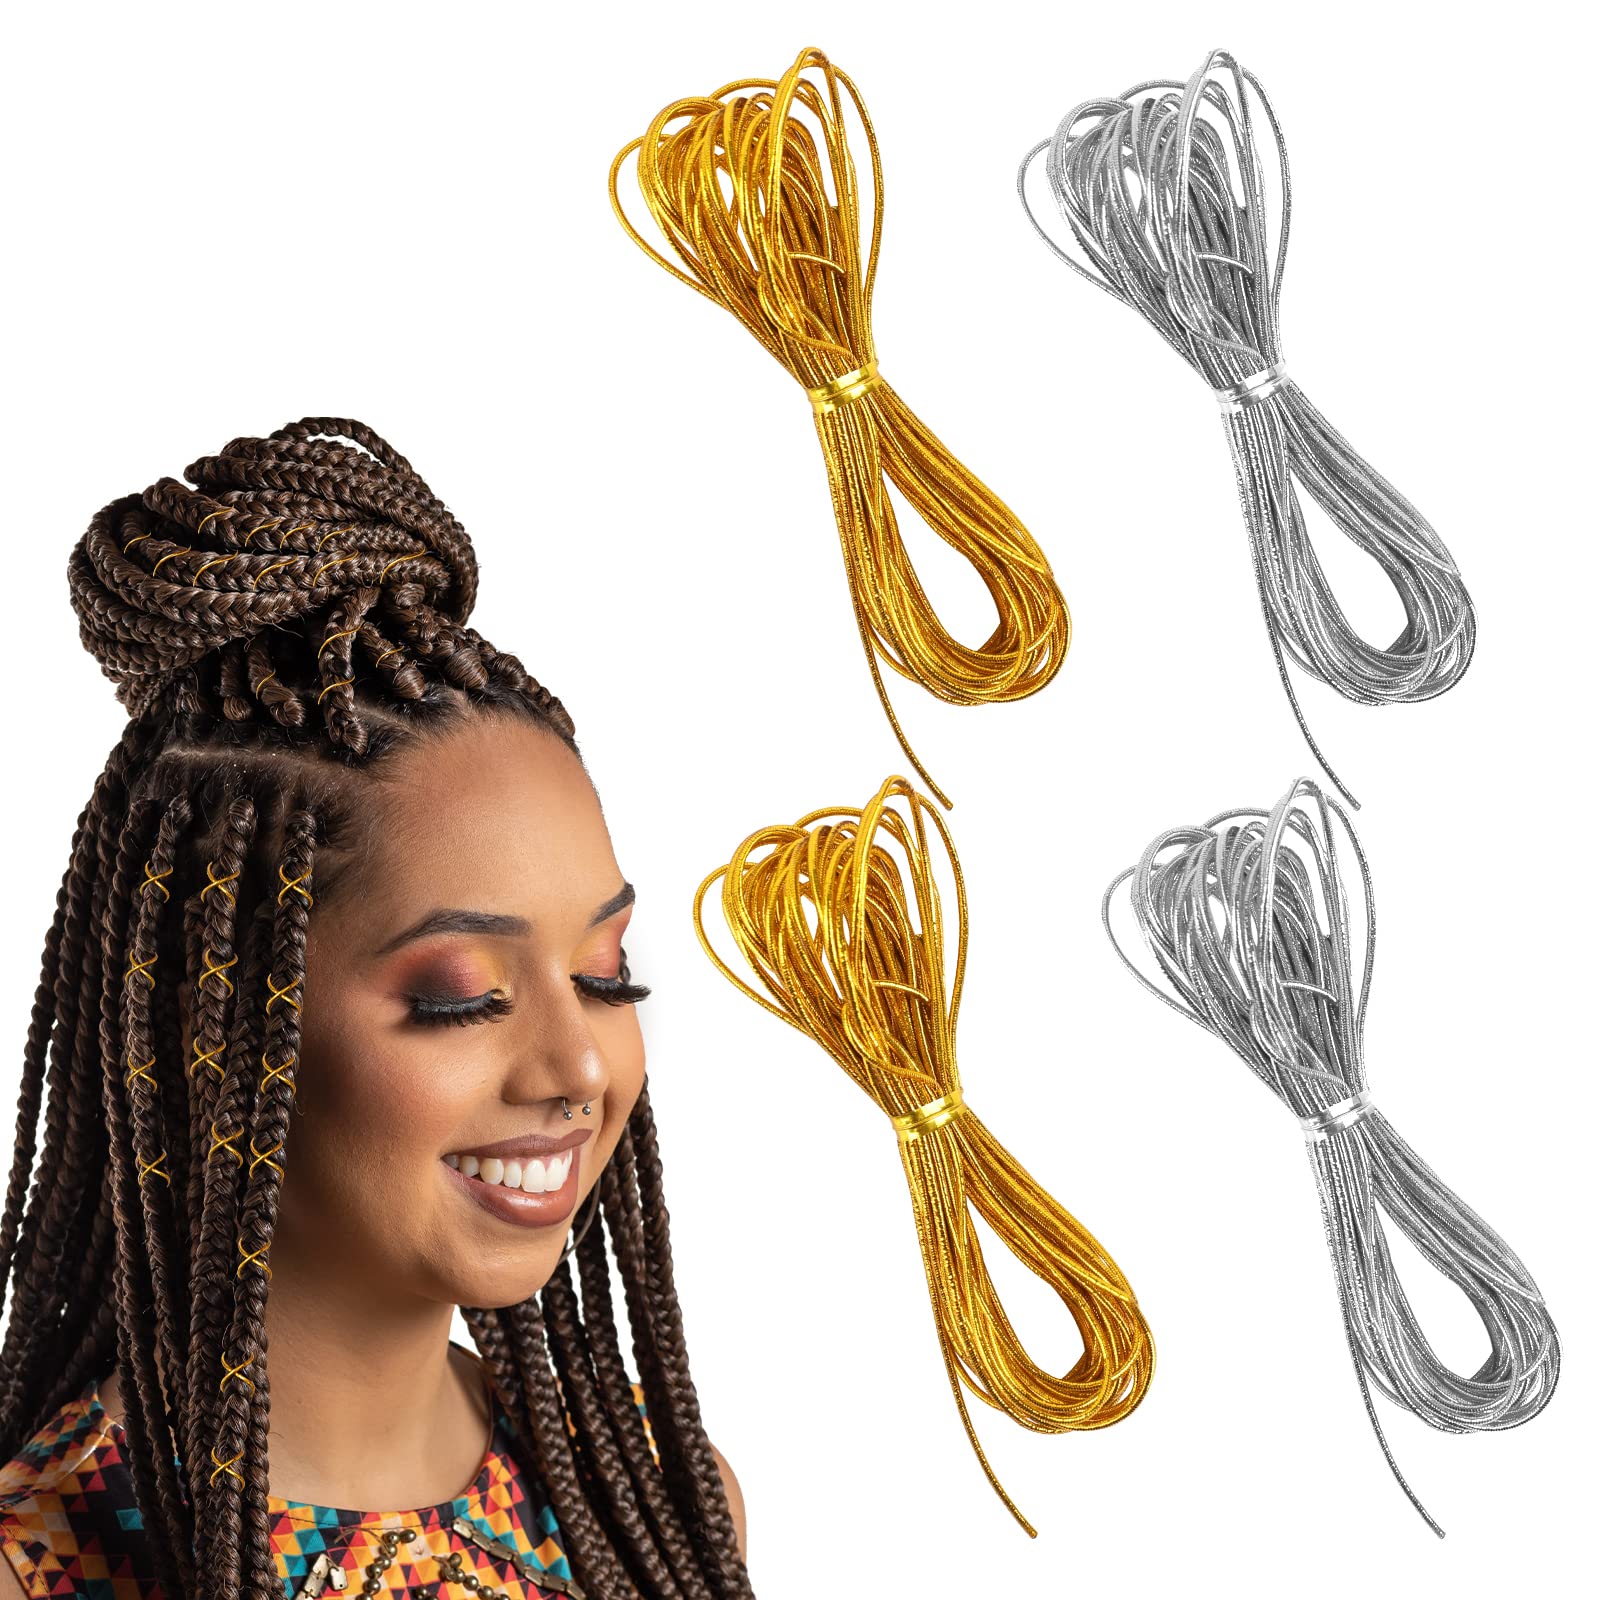 4 Pieces 5M Hair Strings for Braids Hair Accessory String Hair